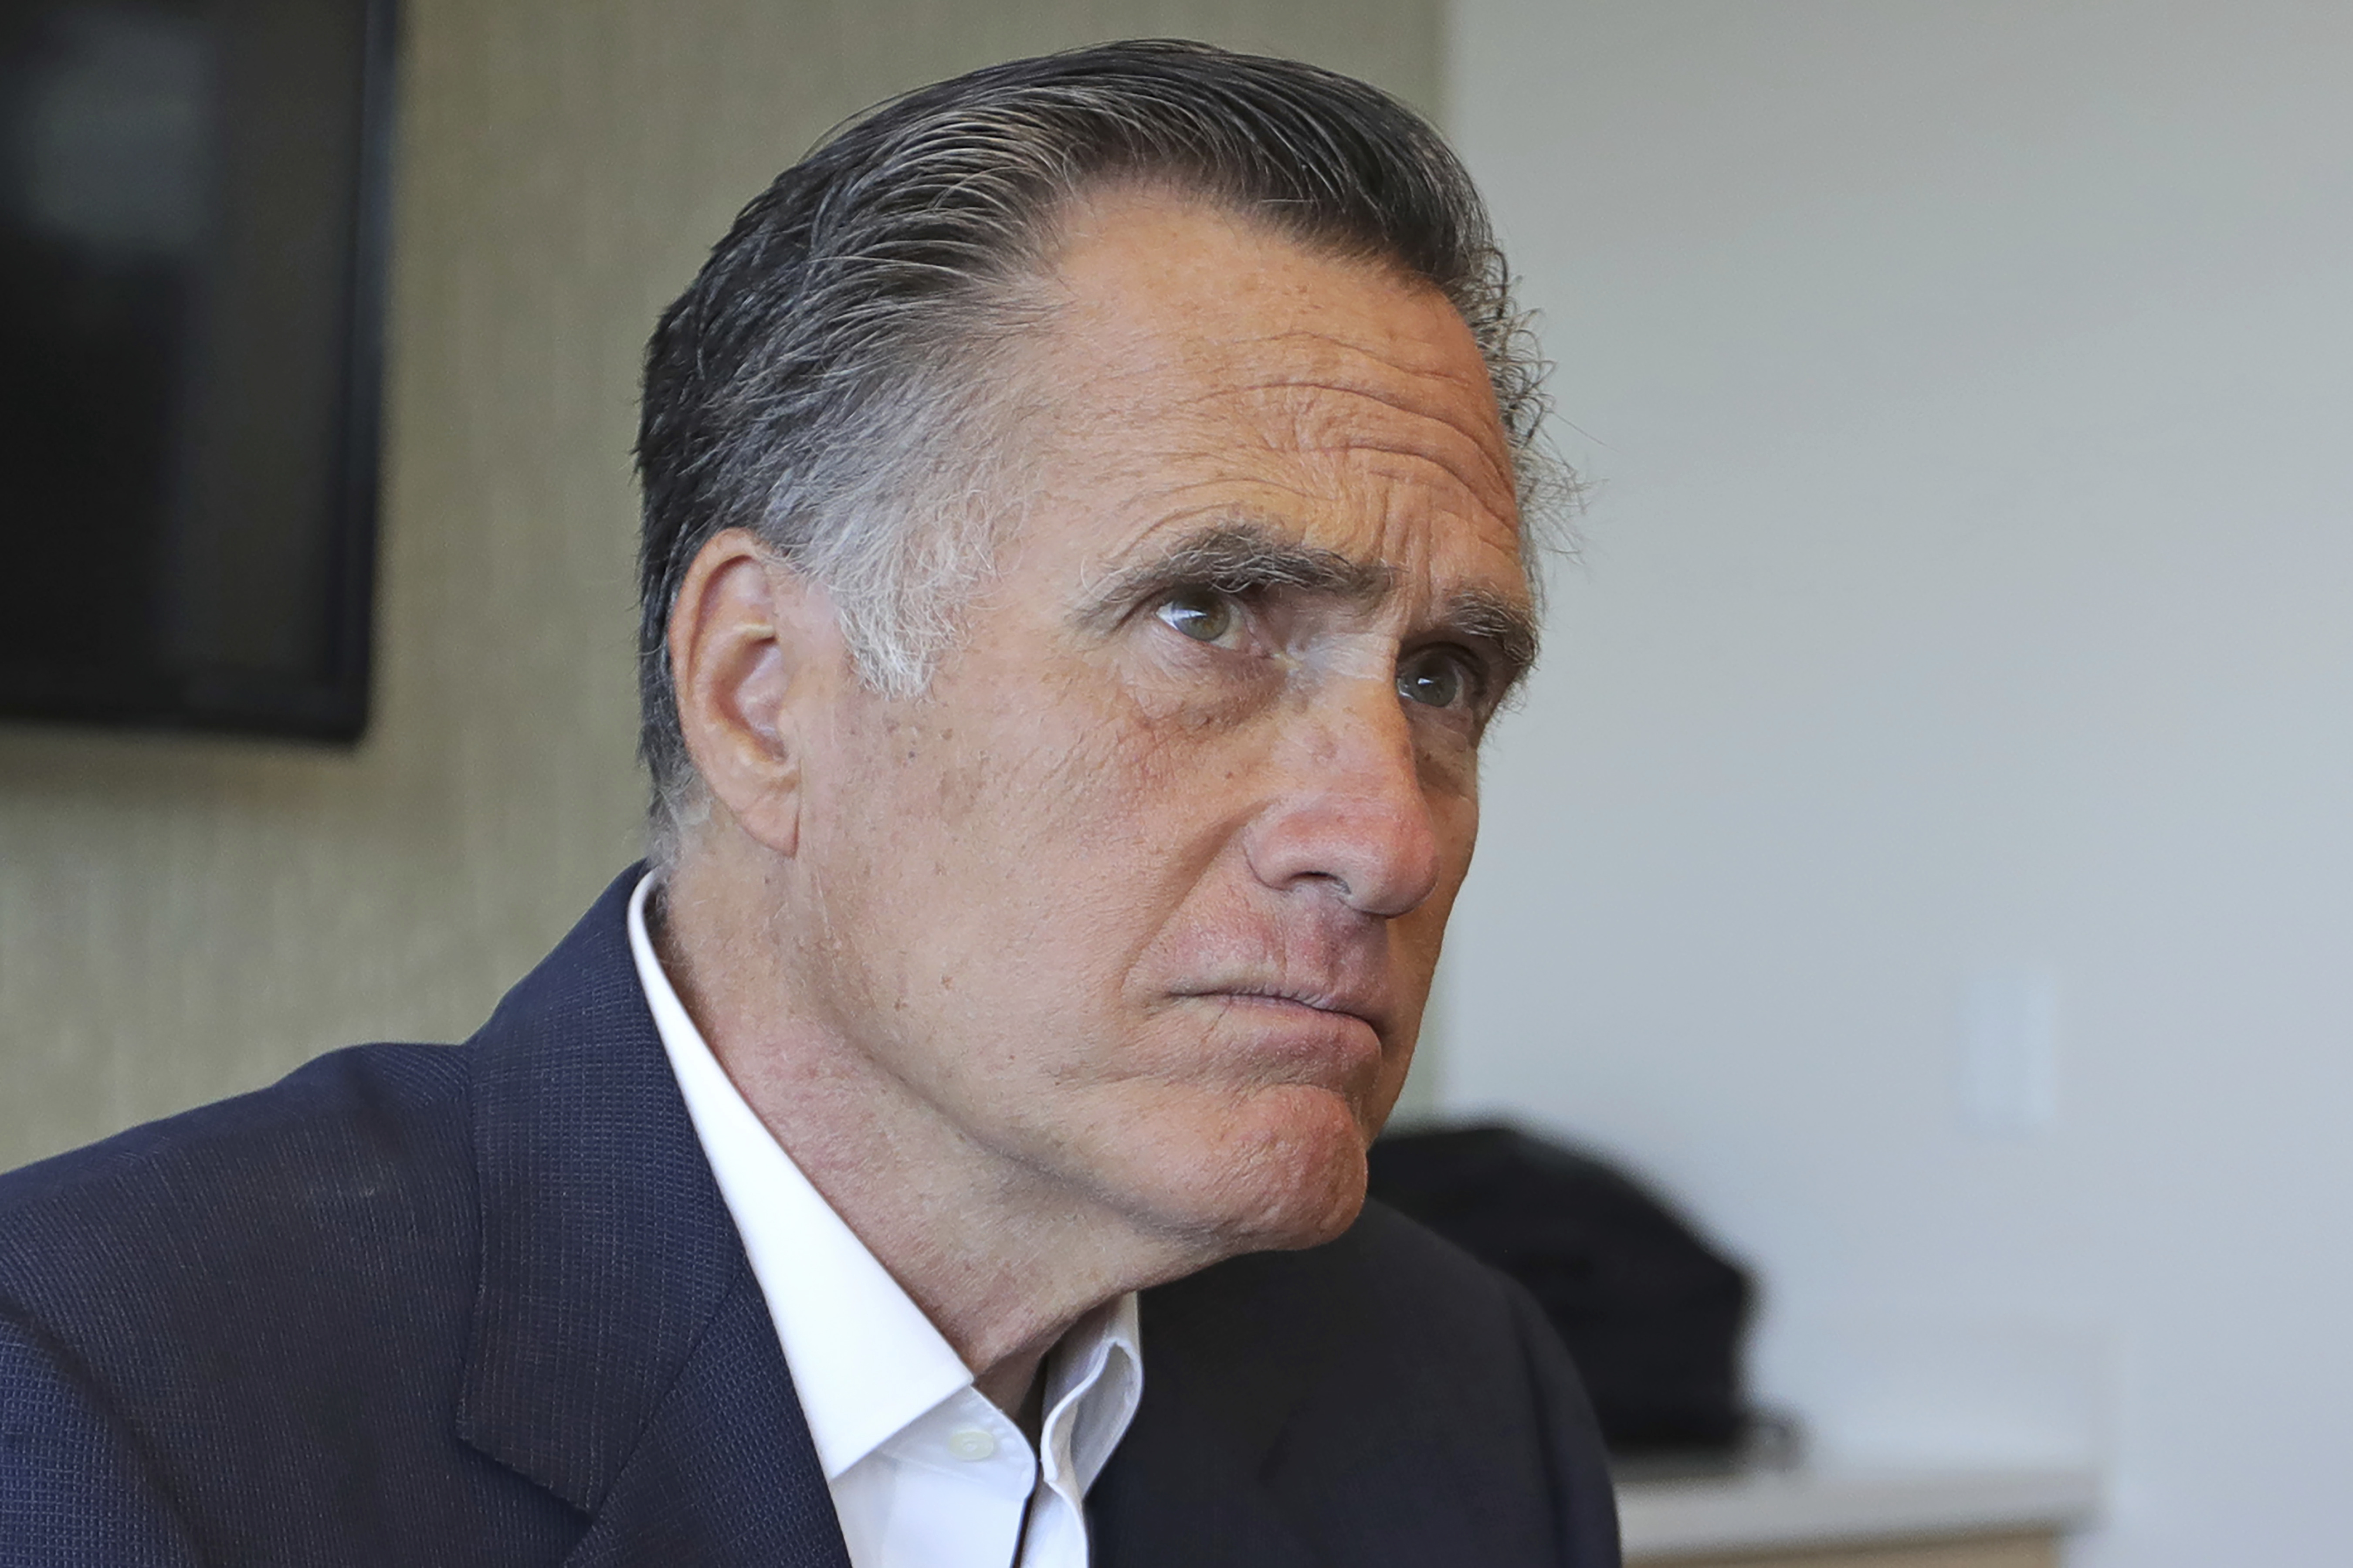 Sen. Mitt Romney, R-Utah